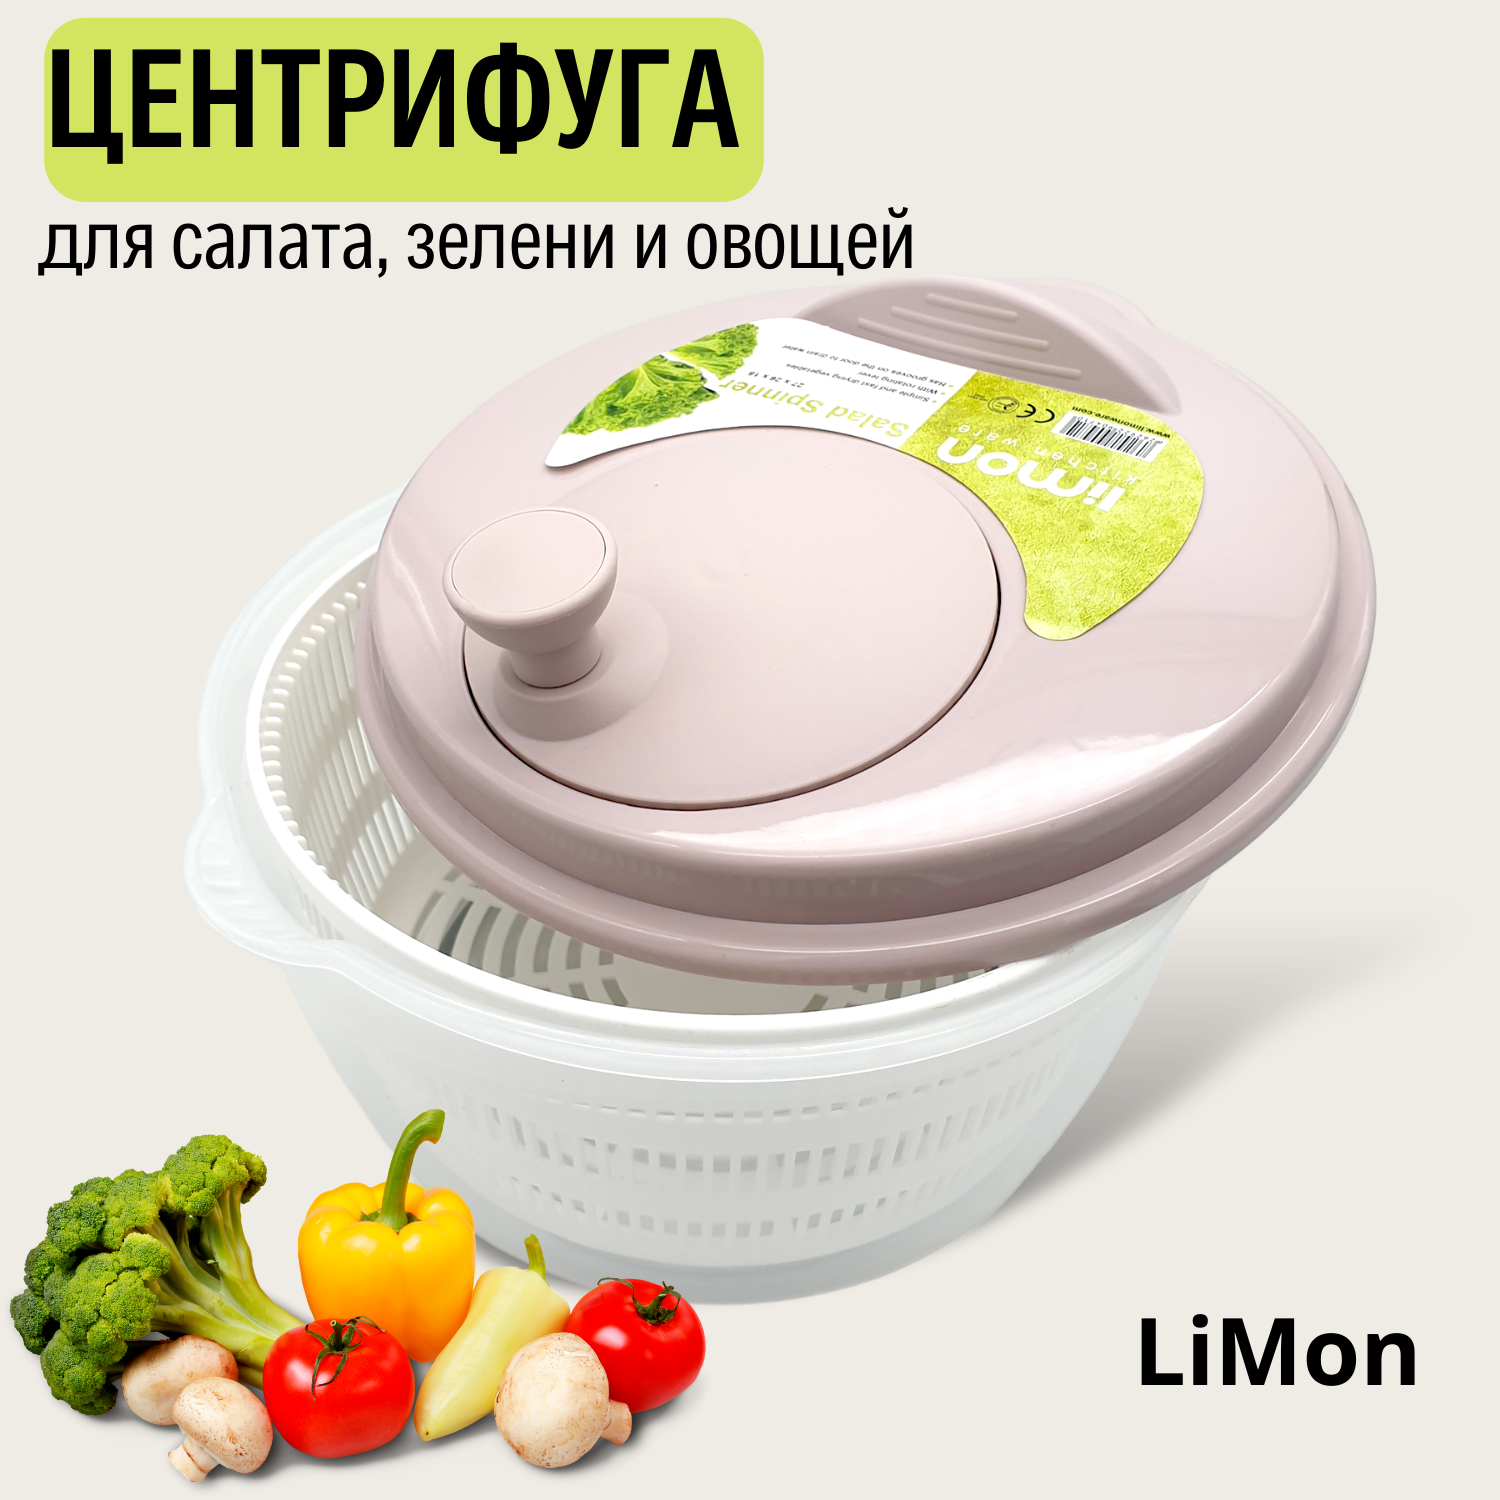 Центрифуга-сушилка для зелени, ягод и салата "LiMON"